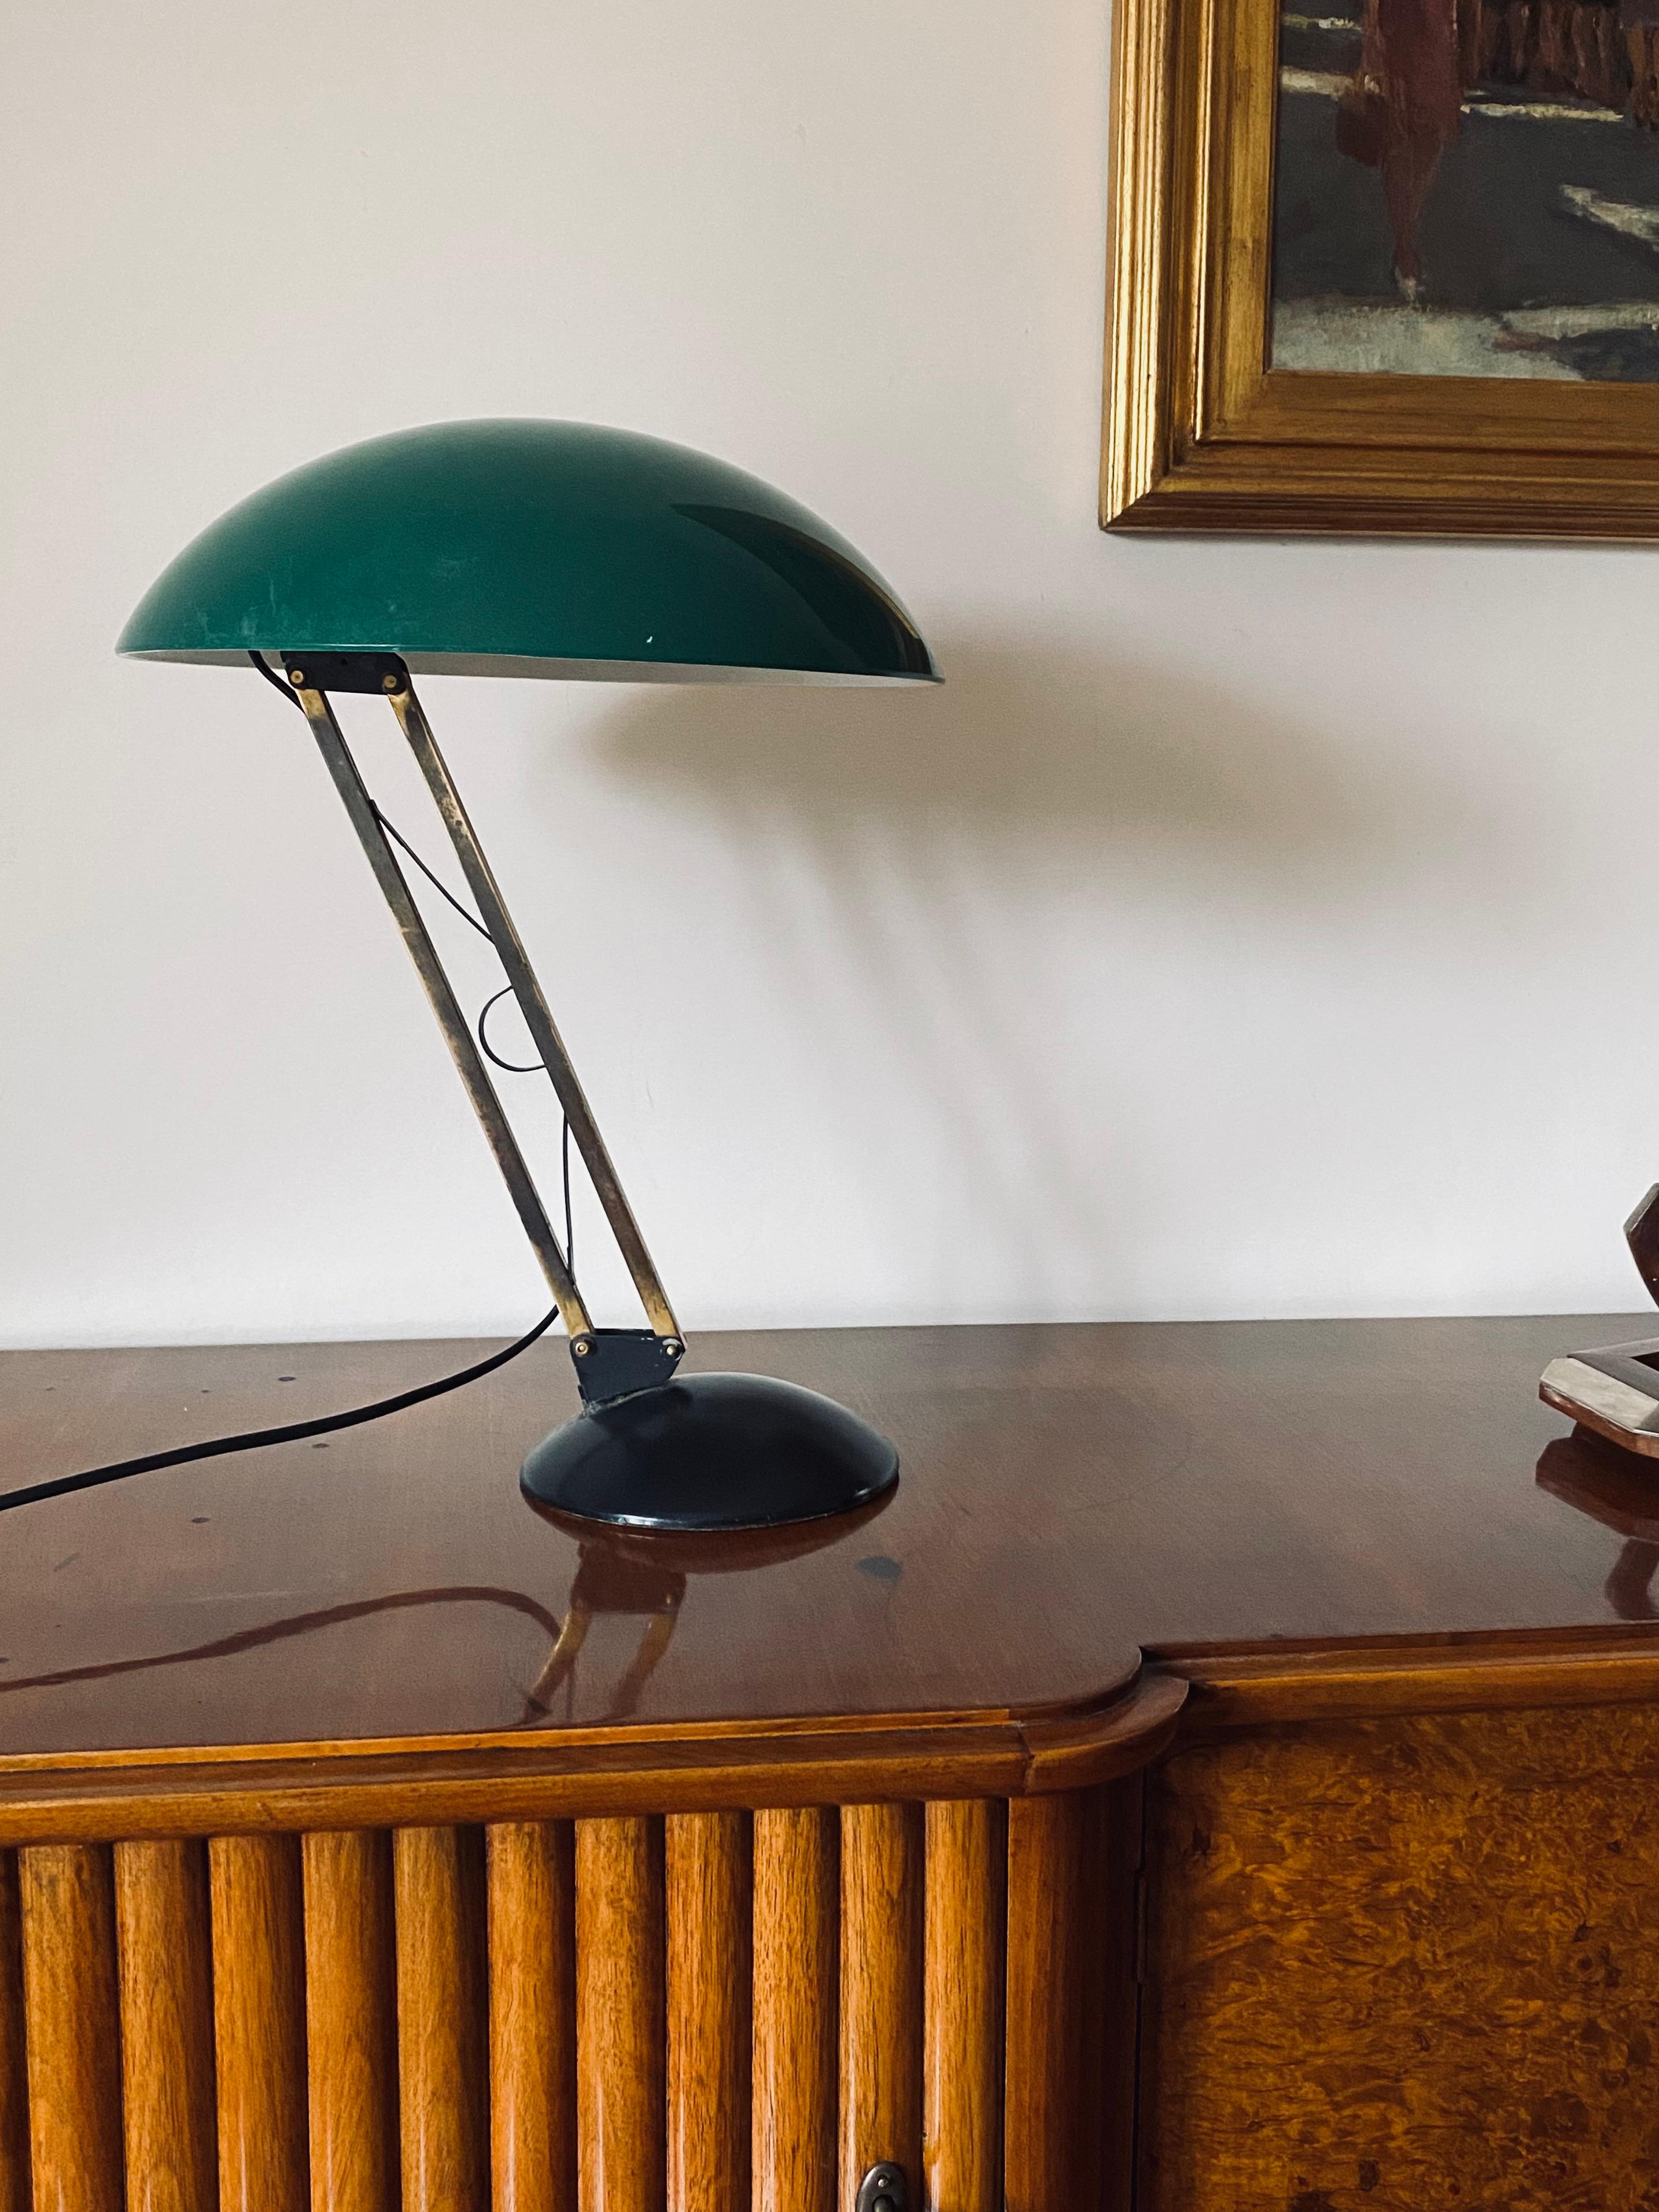 Lampe de table du milieu du siècle 

Italie, années 1960

Abat-jour bombé en plexiglas vert. Barre en laiton. Base en aluminium noir

bras articulé avec articulations réglables.

H 47 cm 

Diamètre 37 cm

État : bon, conforme à l'âge et à